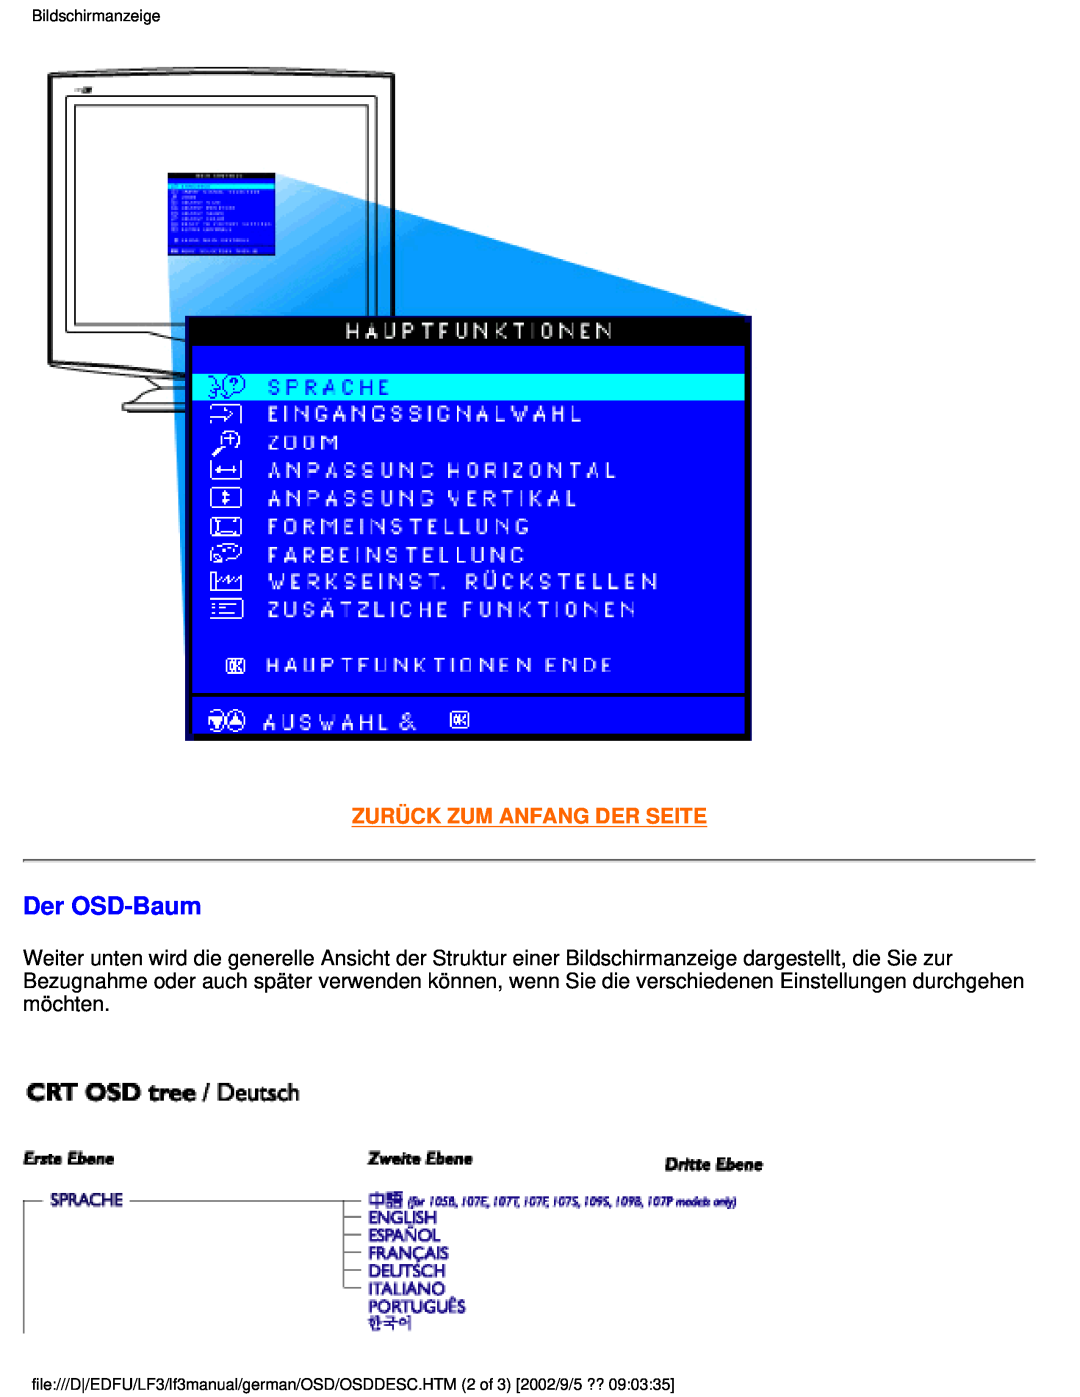 Philips 107E user manual Der OSD-Baum, Zurück Zum Anfang Der Seite, Bildschirmanzeige 